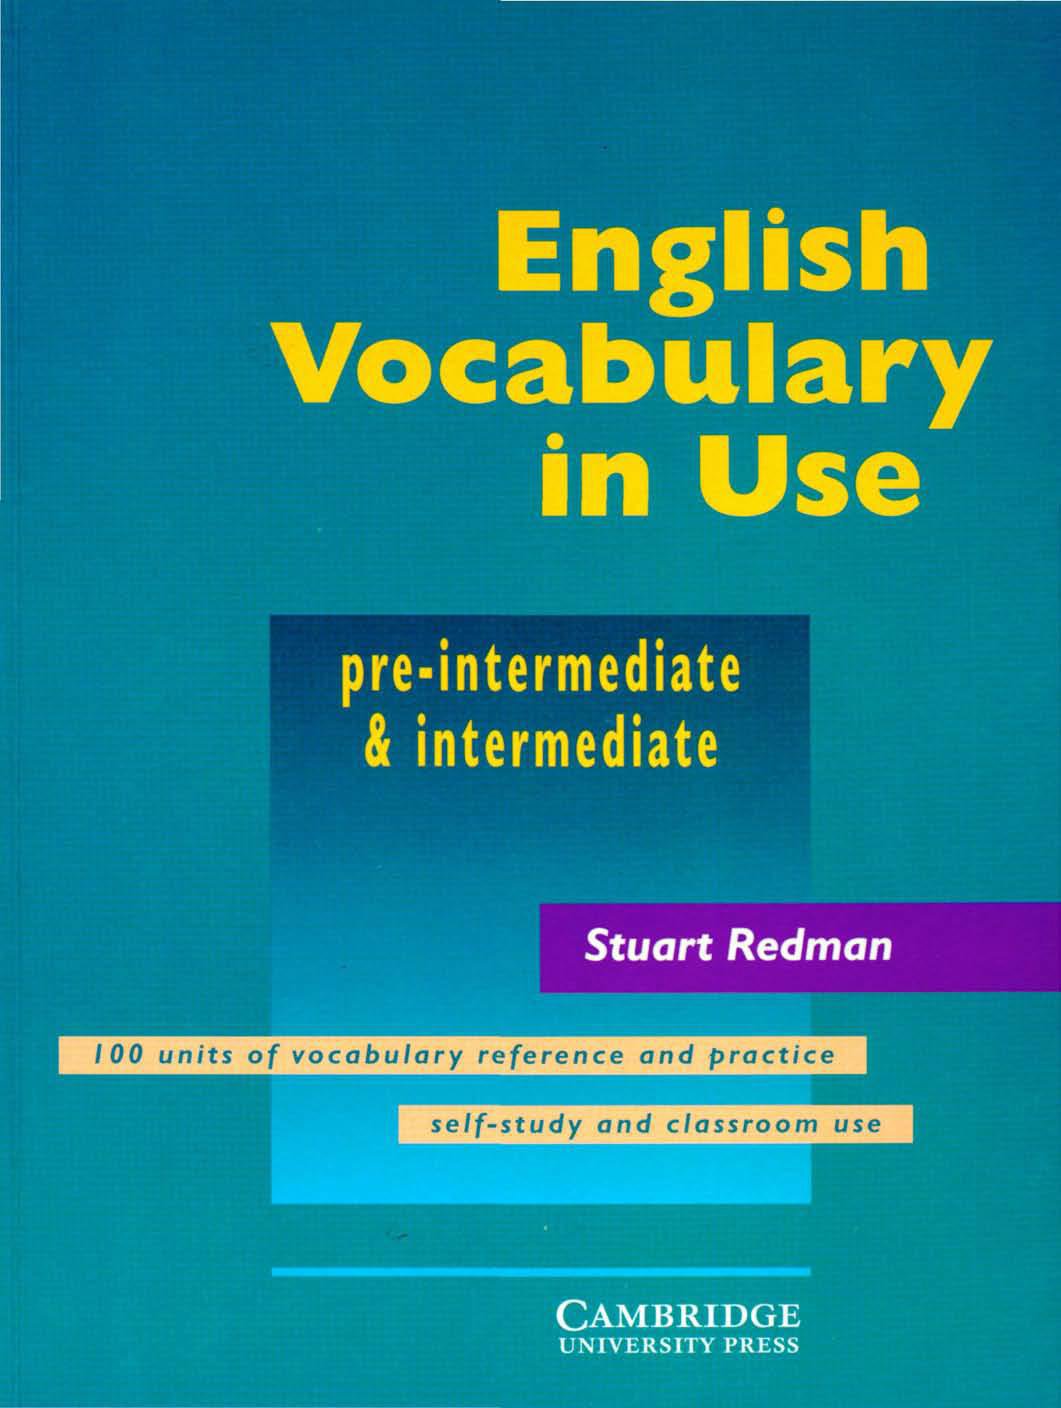 english-vocabulary-in-use-for-pre-intermediate-and-intermediate